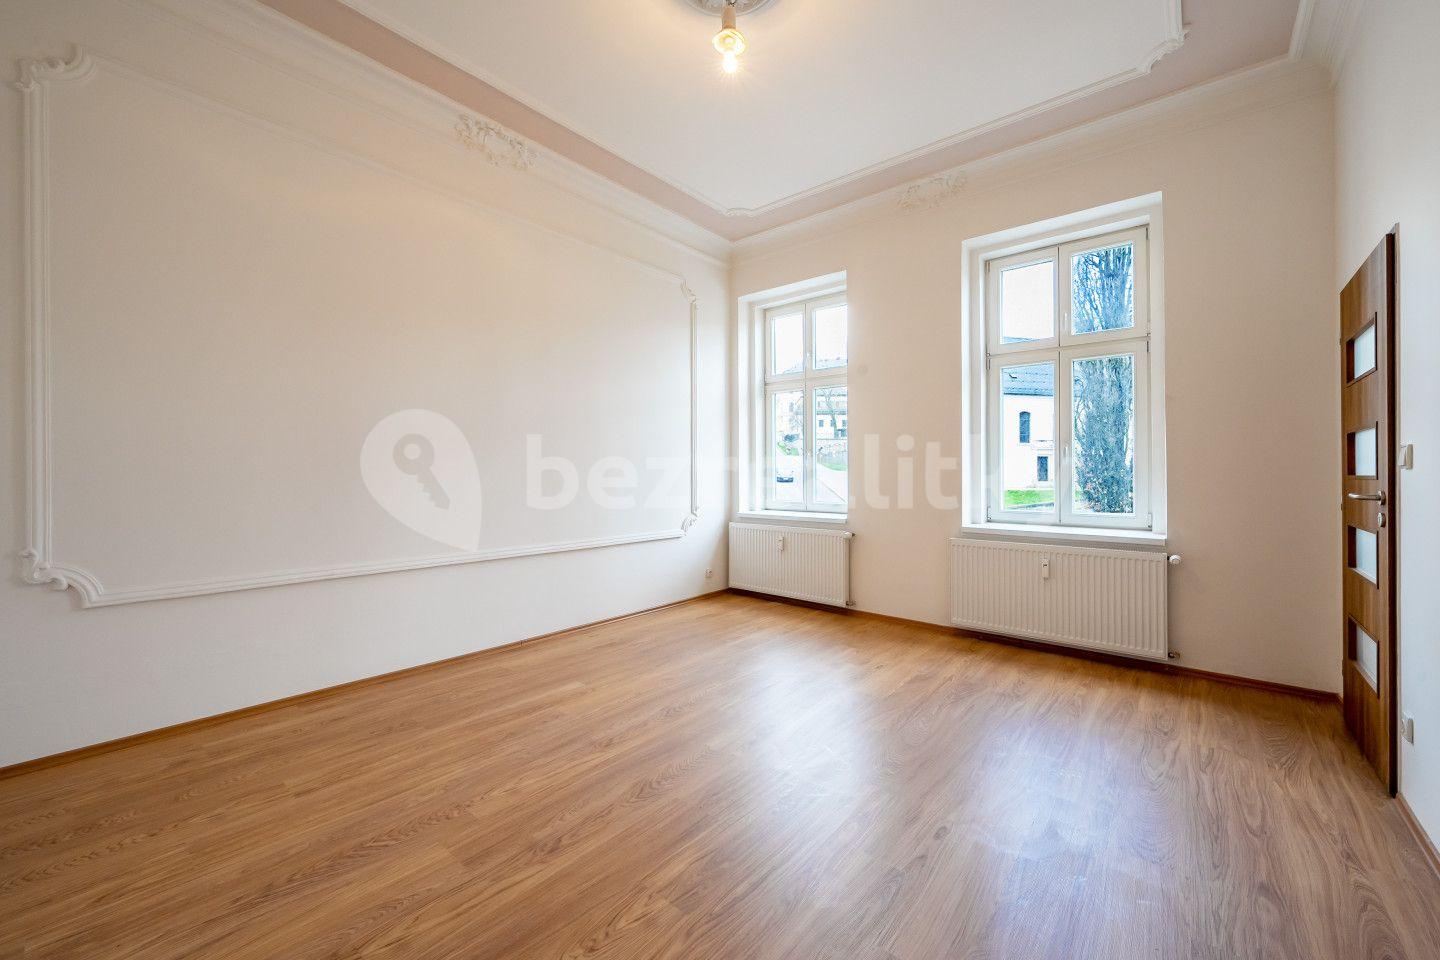 1 bedroom with open-plan kitchen flat for sale, 55 m², Anenské náměstí, Jablonec nad Nisou, Liberecký Region